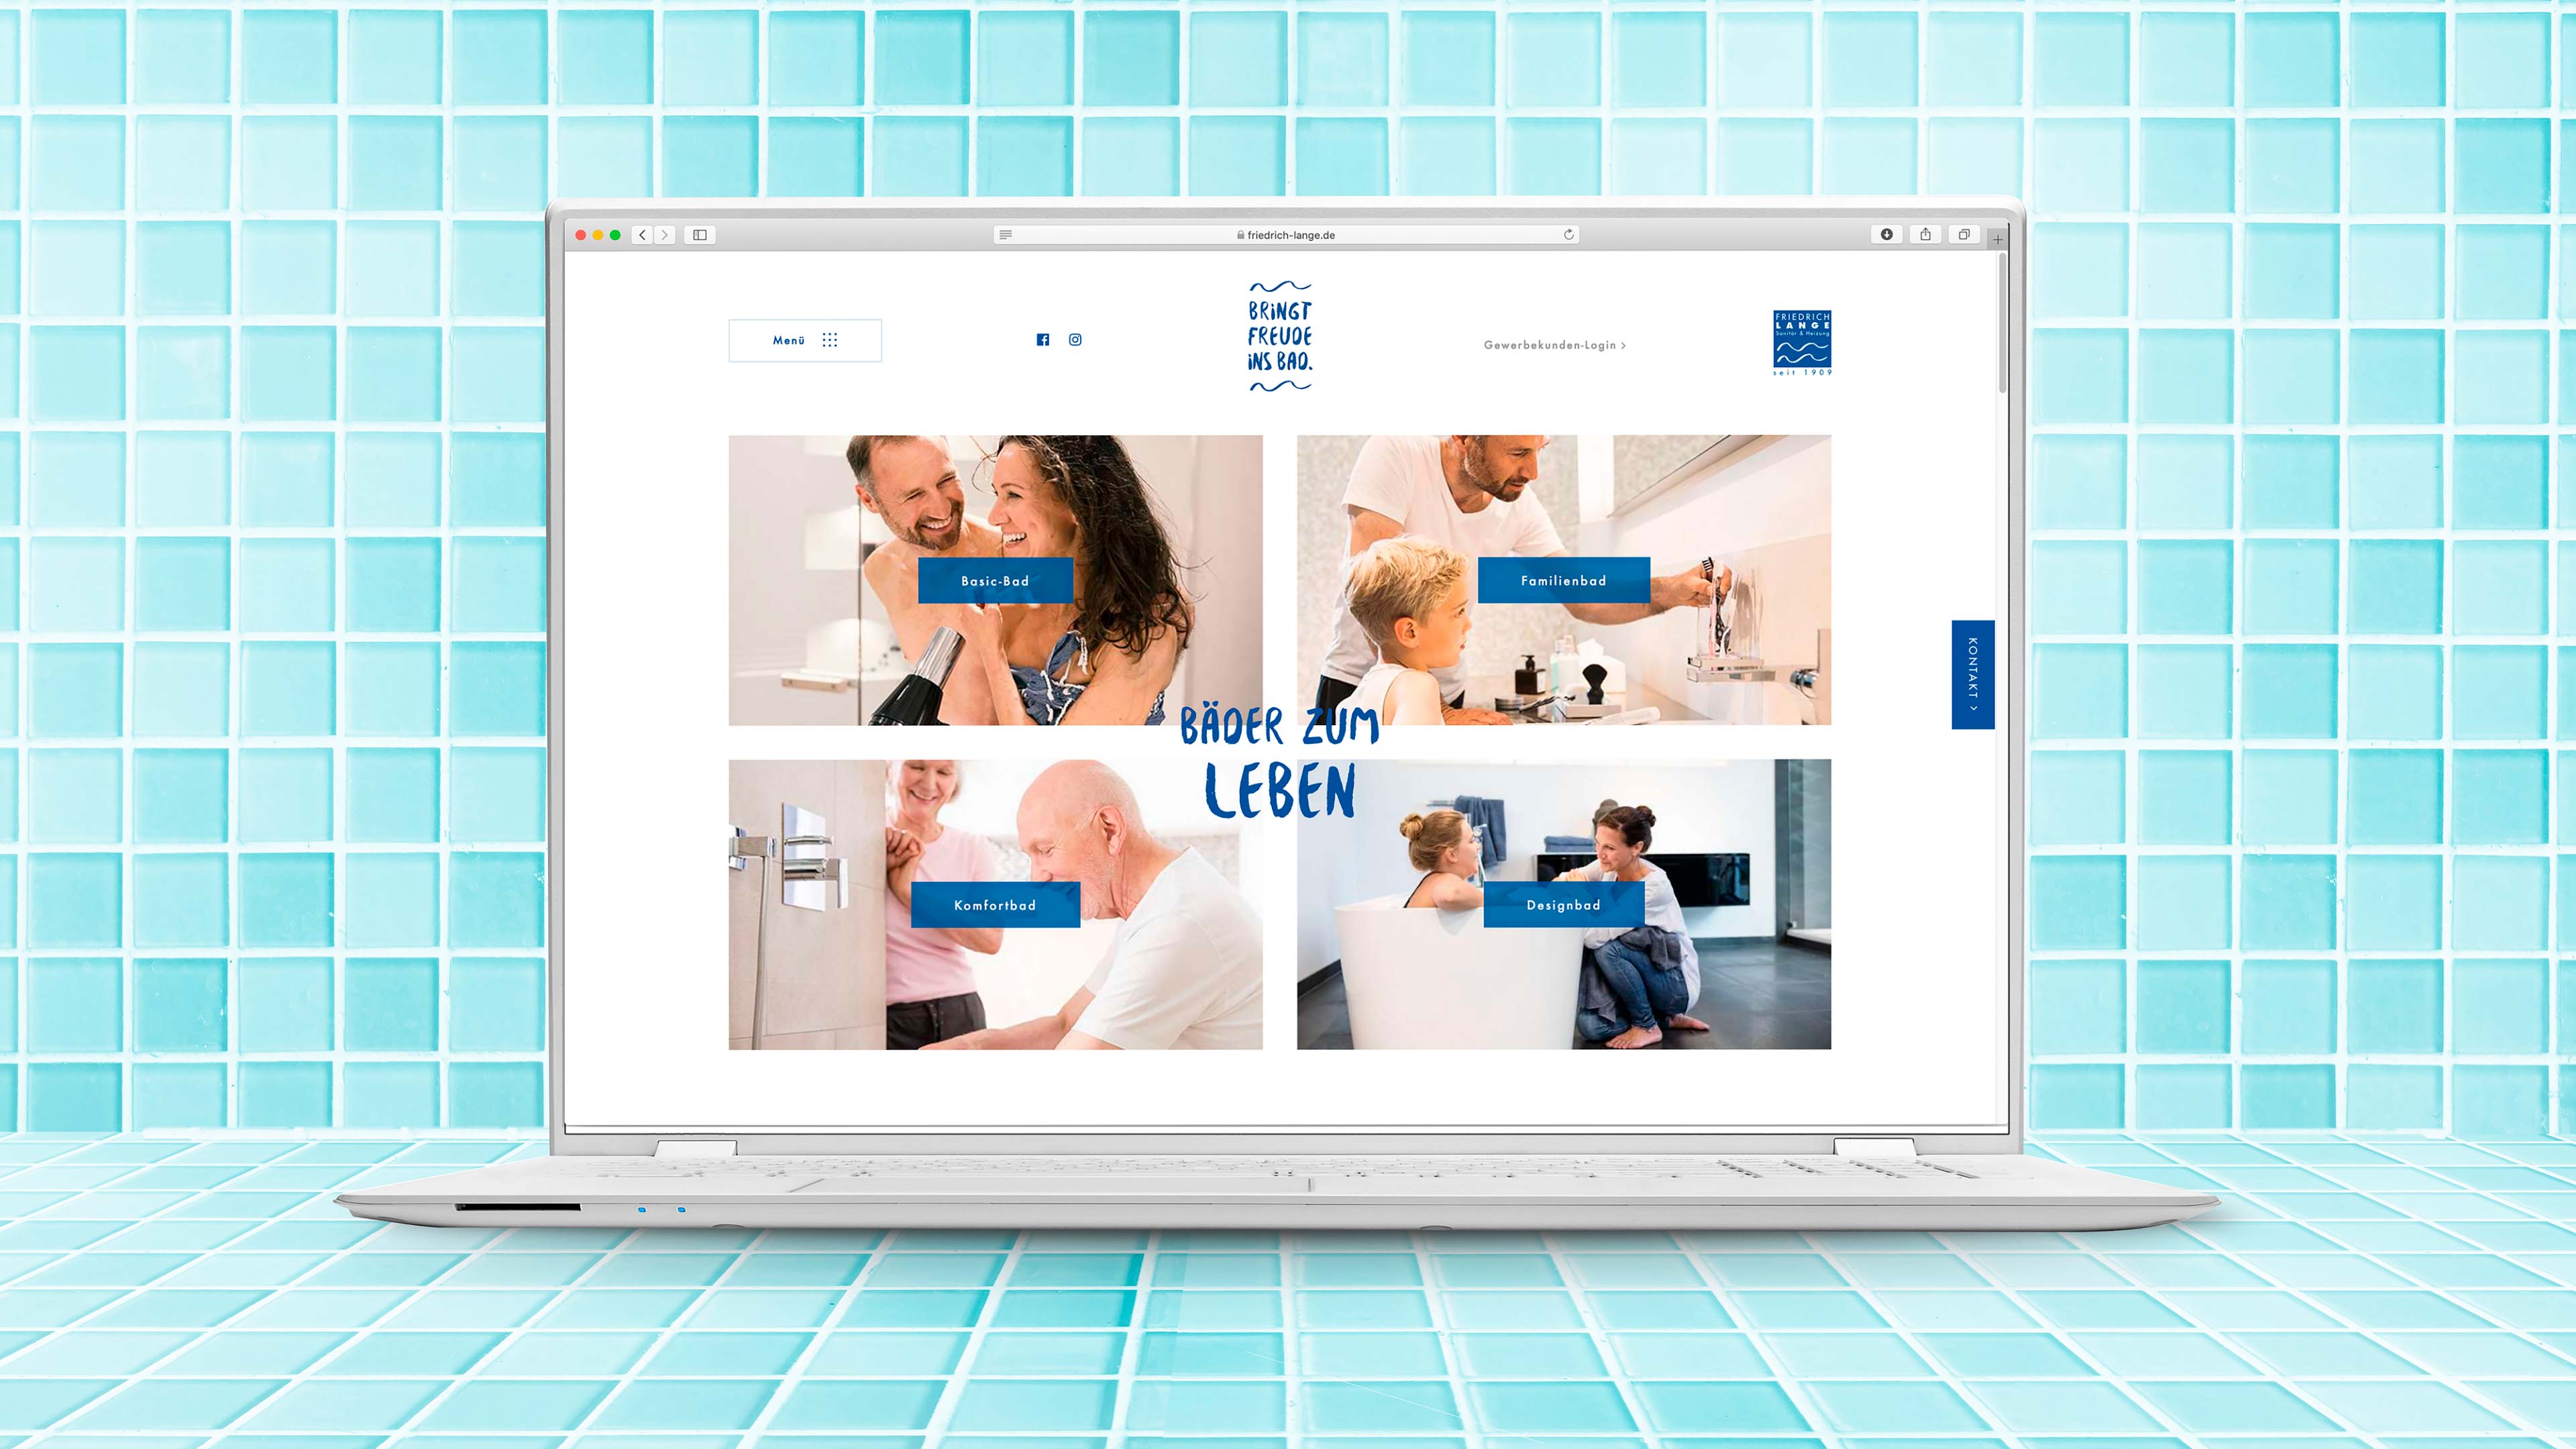 Laptop zeigt Website friedrich-lange.de mit Badfotos und Text "Bäder zum Leben"